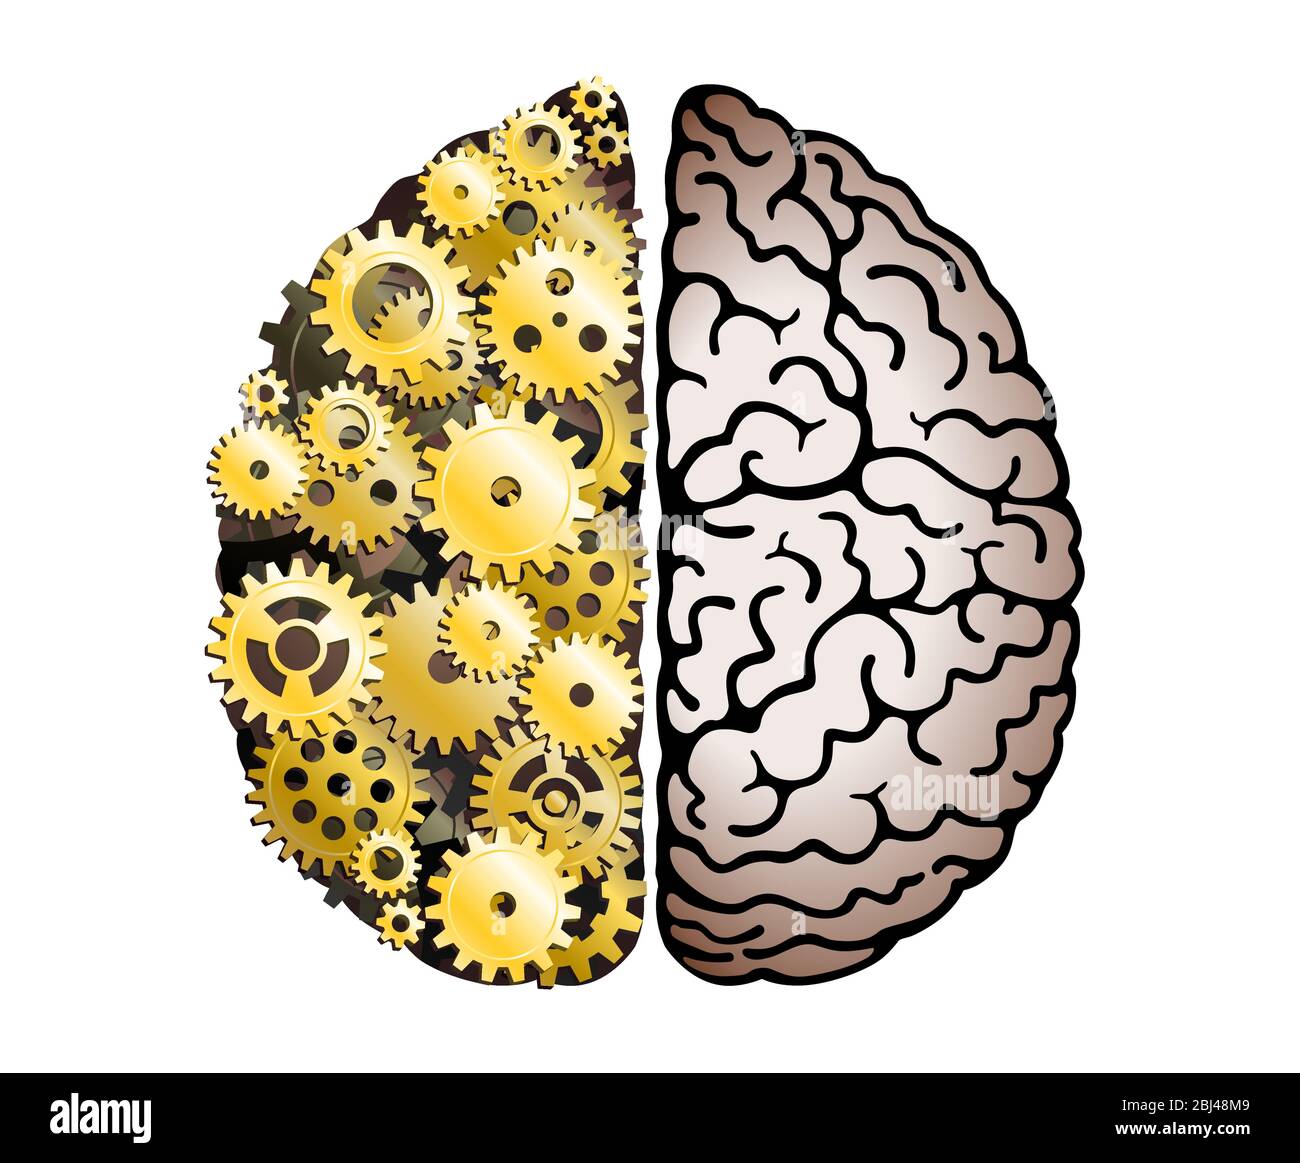 Cervello umano meccanico vettoriale su sfondo bianco. Emisferi cerebrali, convoluzioni della mente cervello. Ruota dentata e ingranaggi, duro processo di pensiero Illustrazione Vettoriale